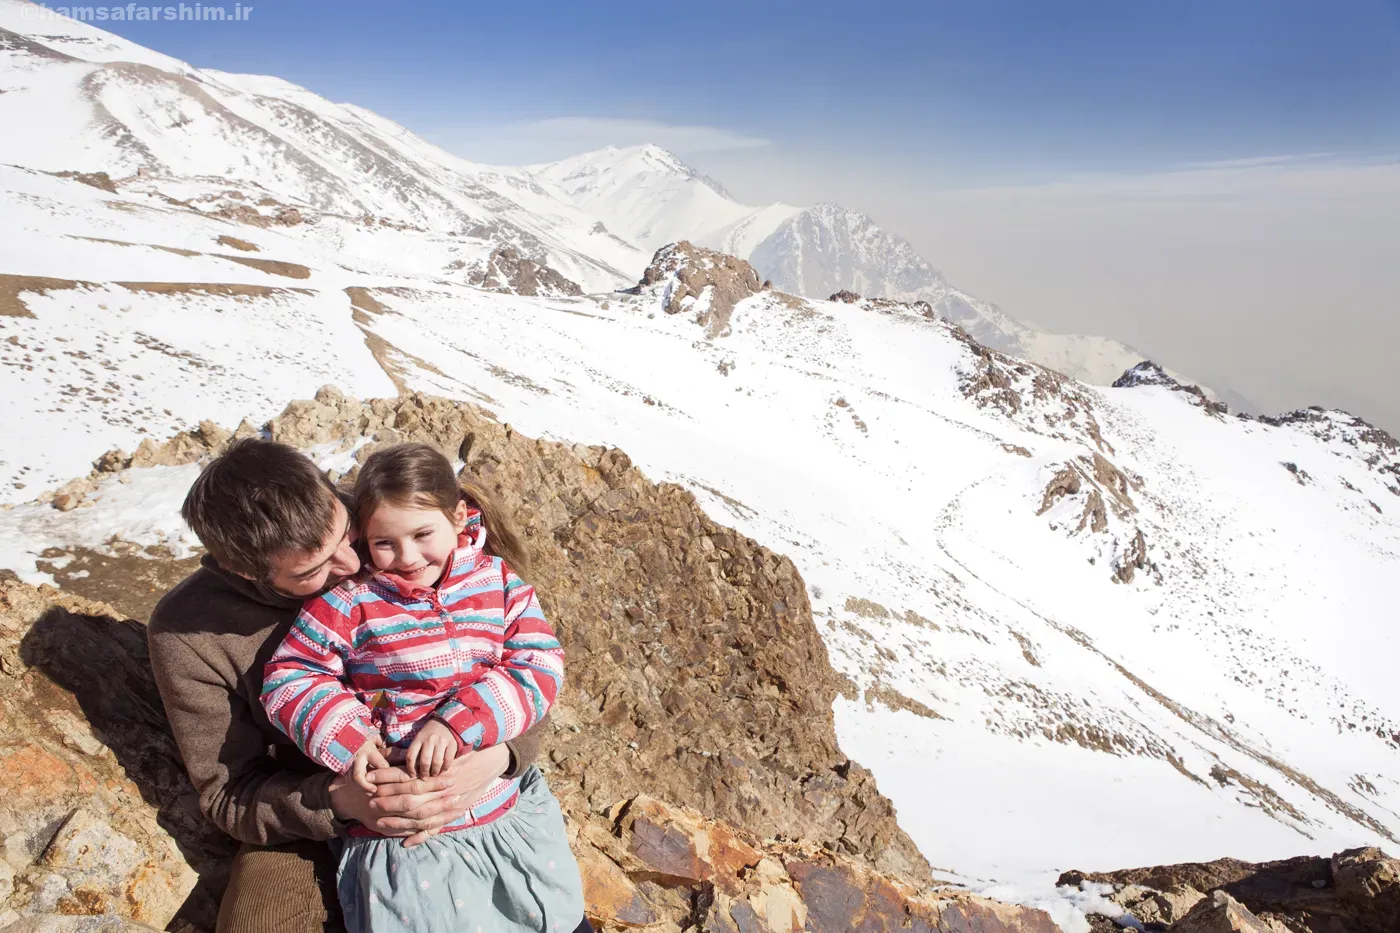 سفر با کودکان - در دل کوهستان ایران